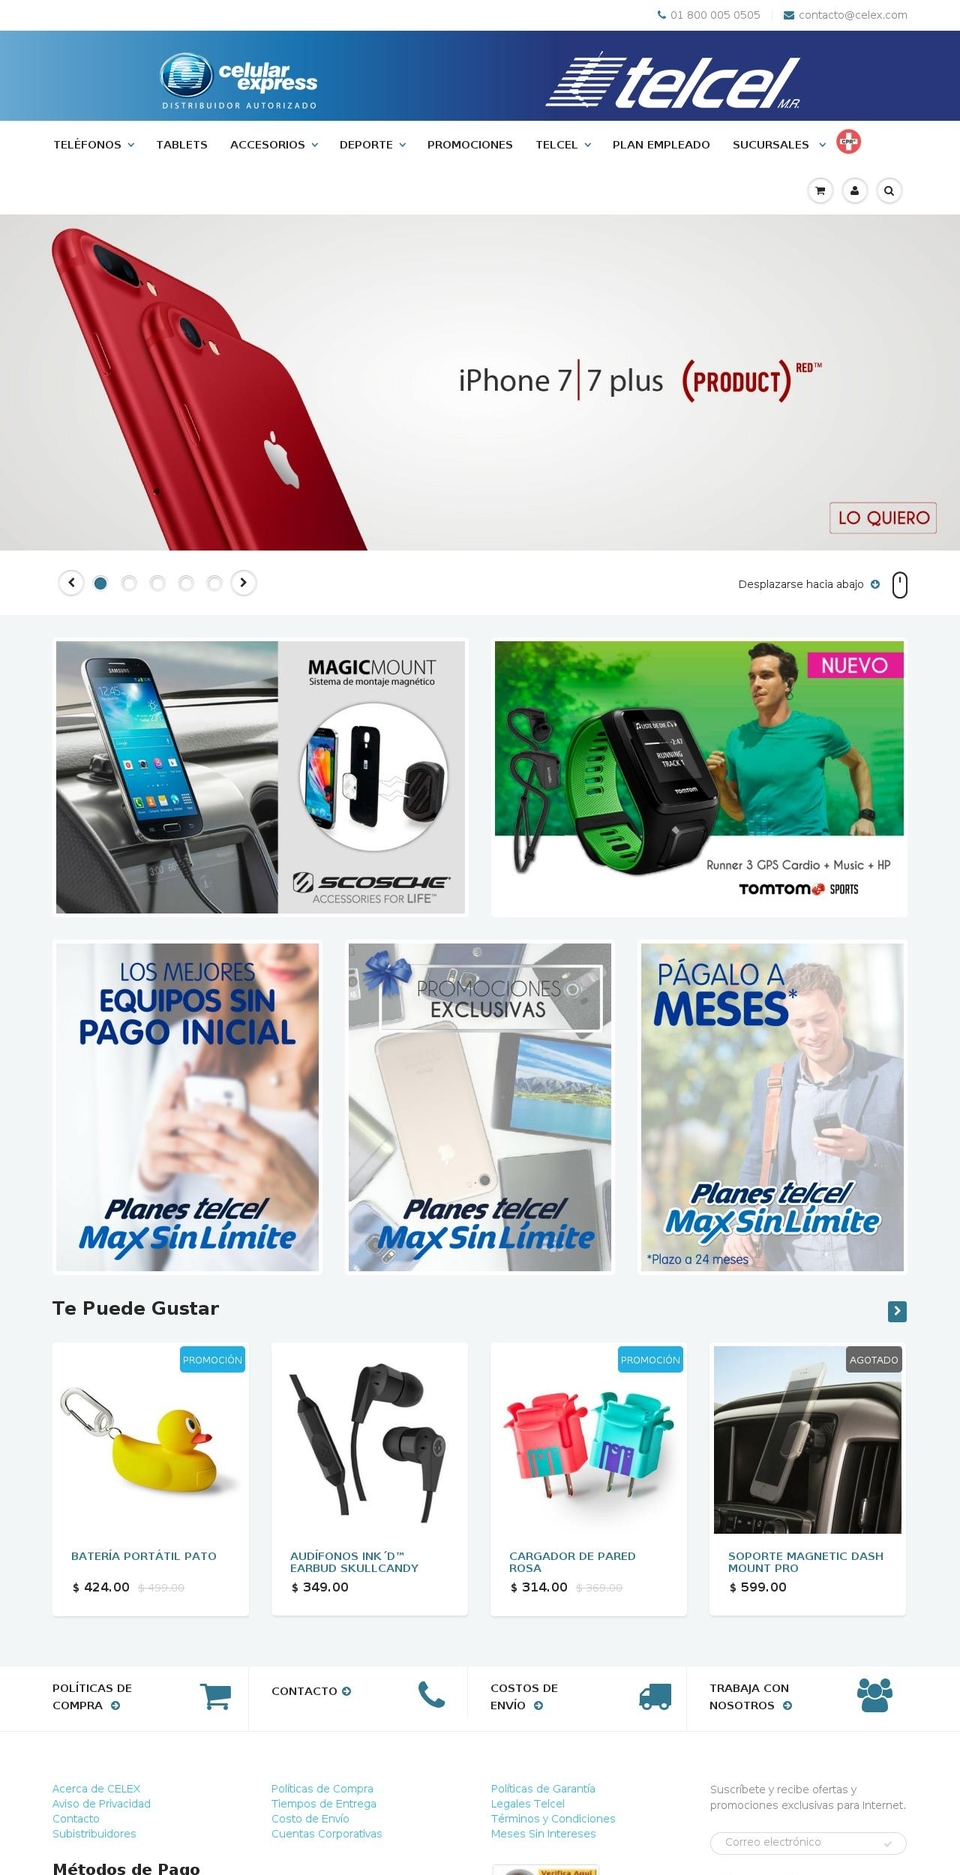 celex.com shopify website screenshot